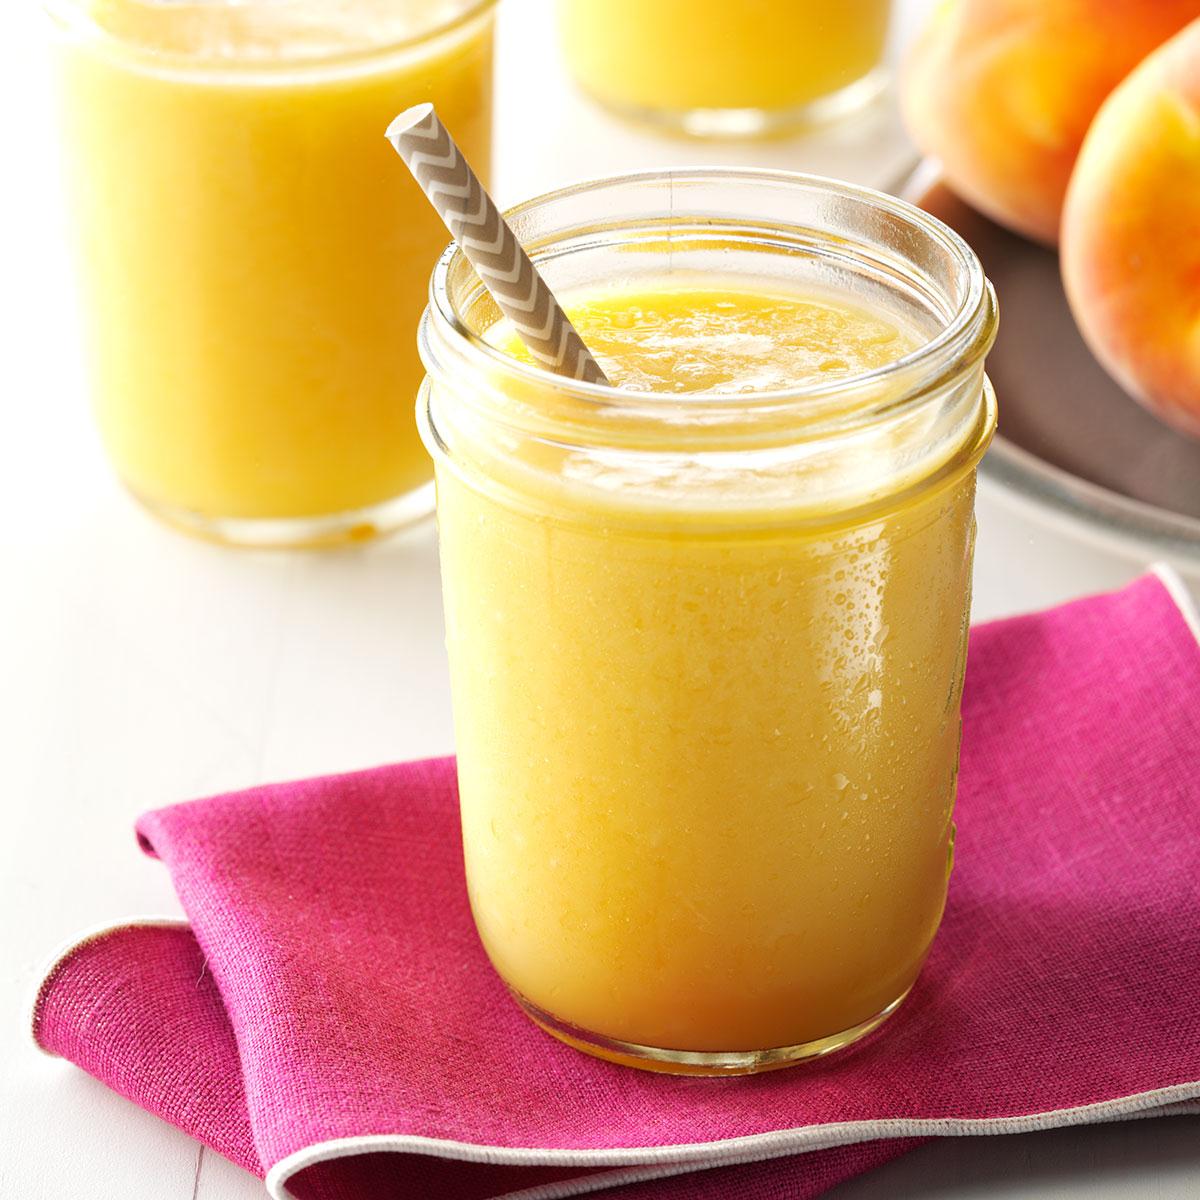 How To Make A Peach Smoothie? 